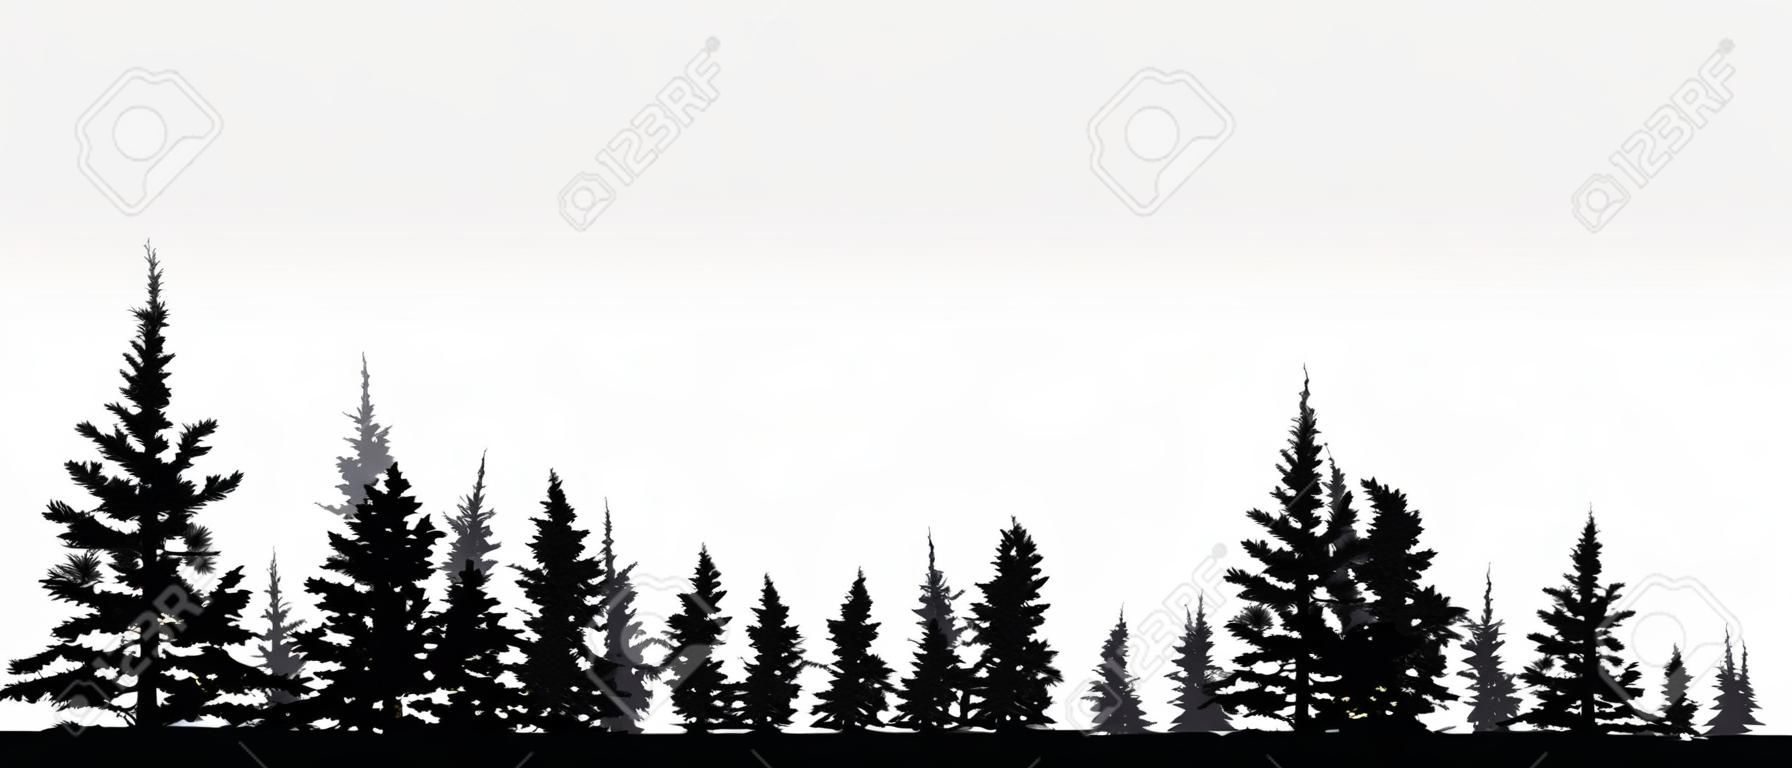 Foresta, conifere, fondo di vettore della siluetta. Albero, abete, albero di natale, abete rosso, pino